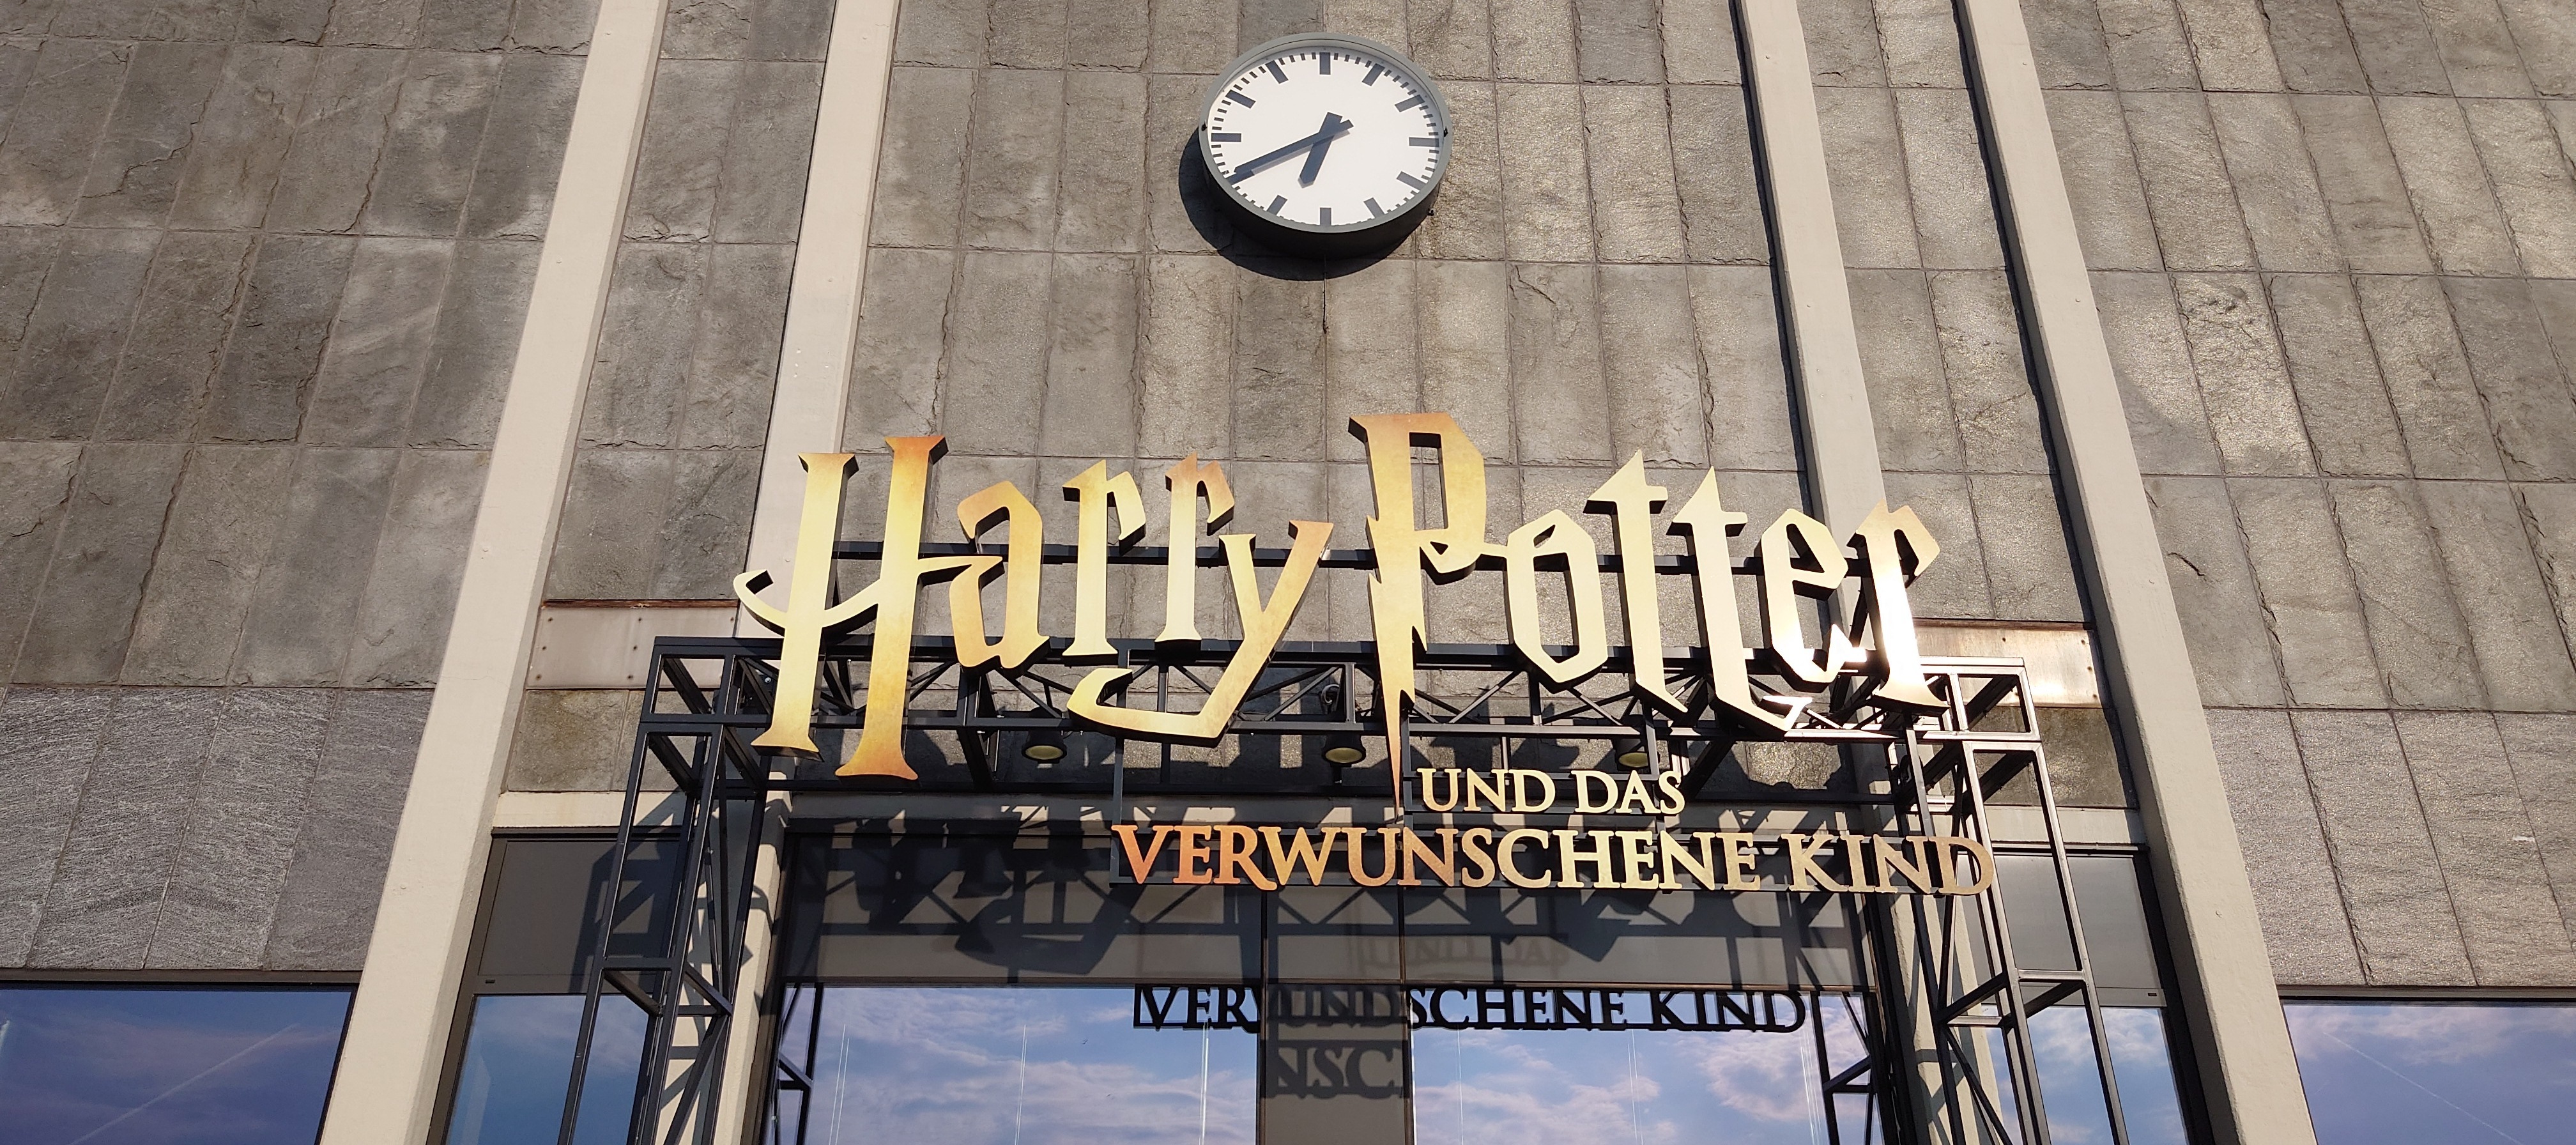 Bericht zu  Harry Potter und das verwunschene Kind  in Hamburg